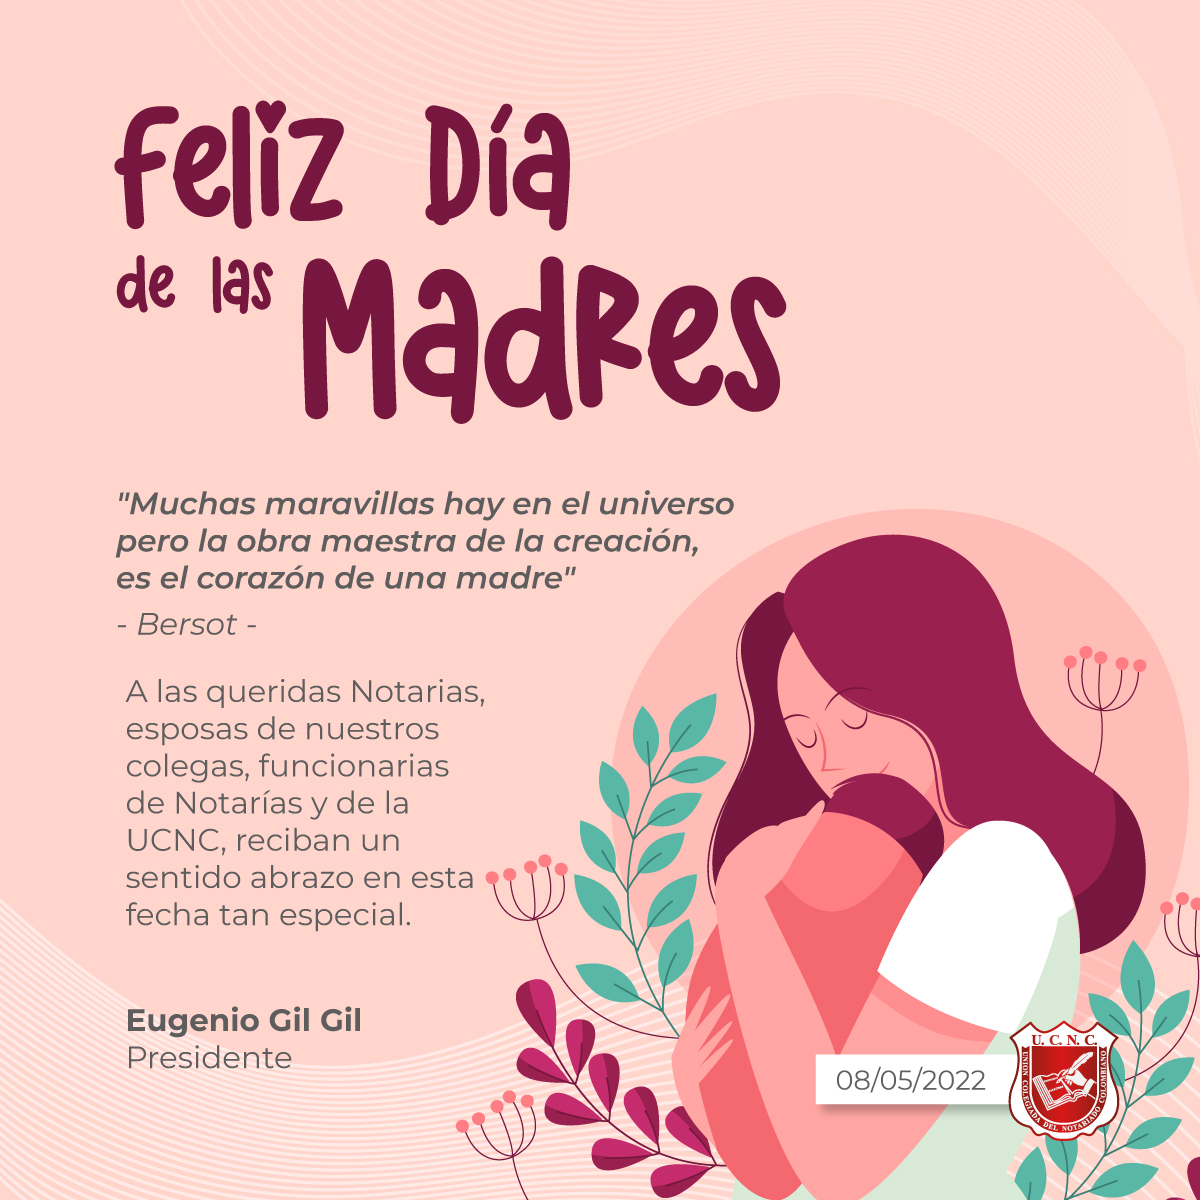 Les Desamos un 'Feliz dia de las Madres' — PPSSF